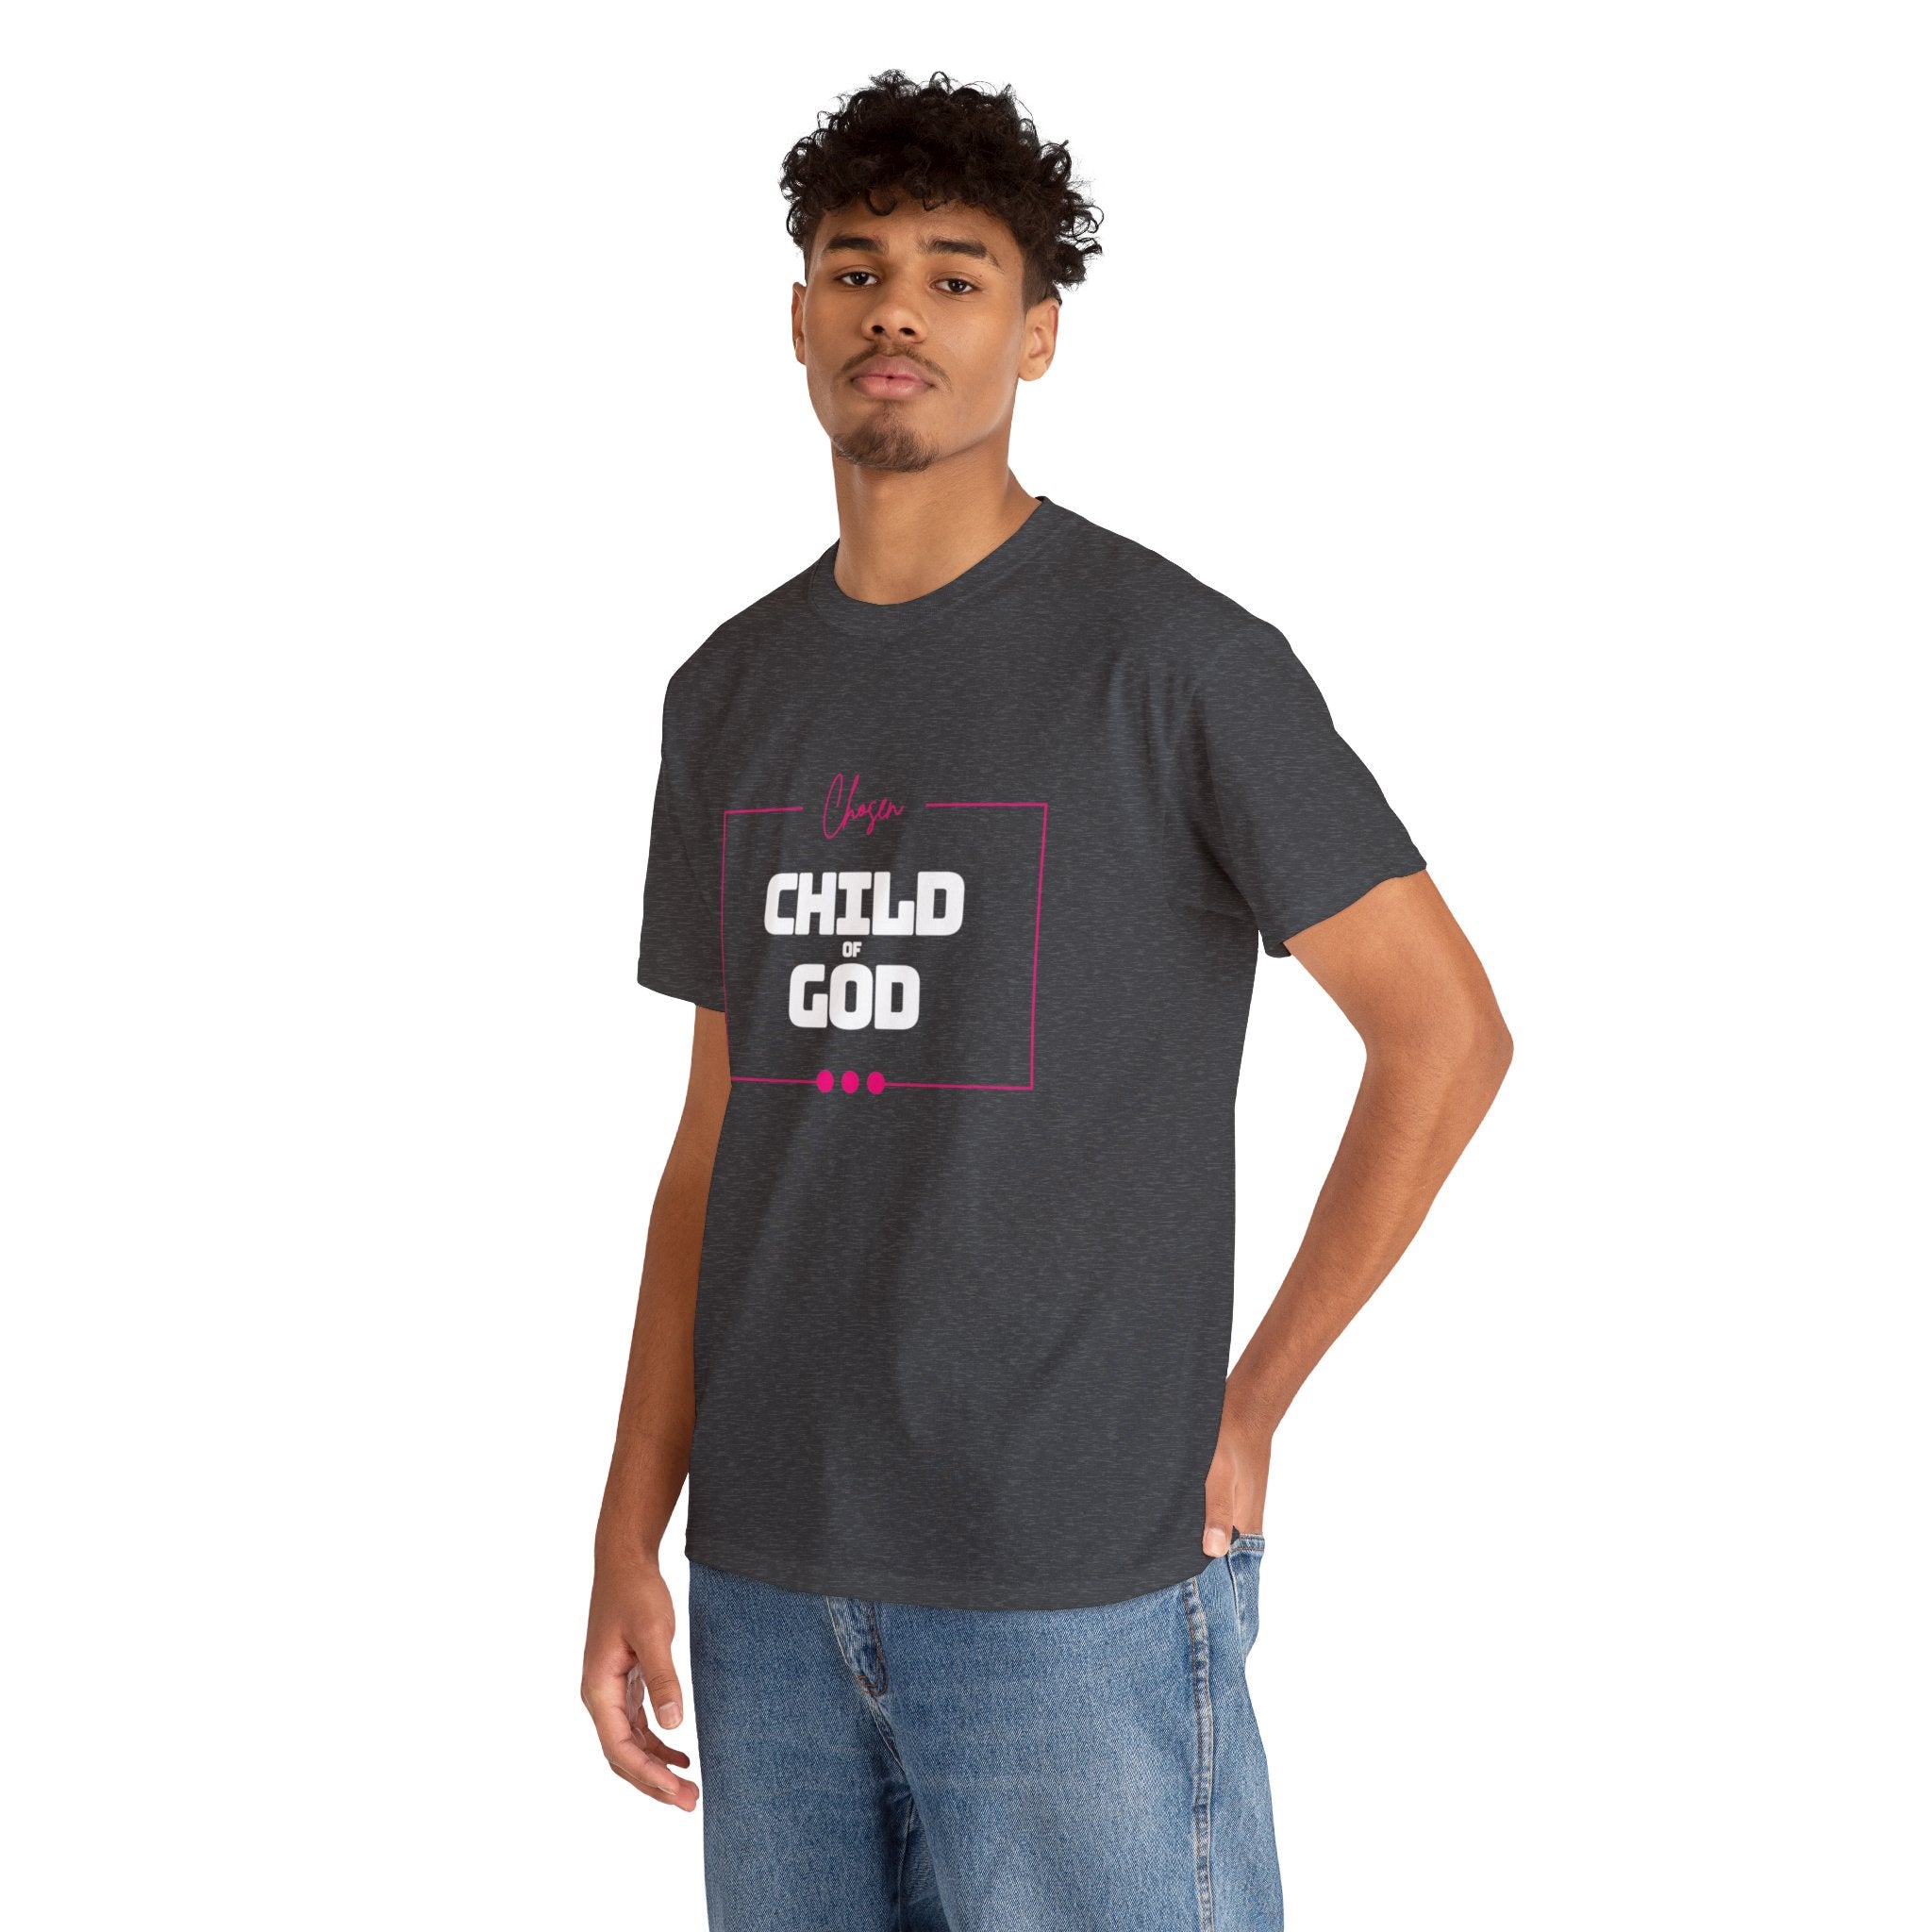 1 Peter 2:9 T-Shirt, Chosen Child of God